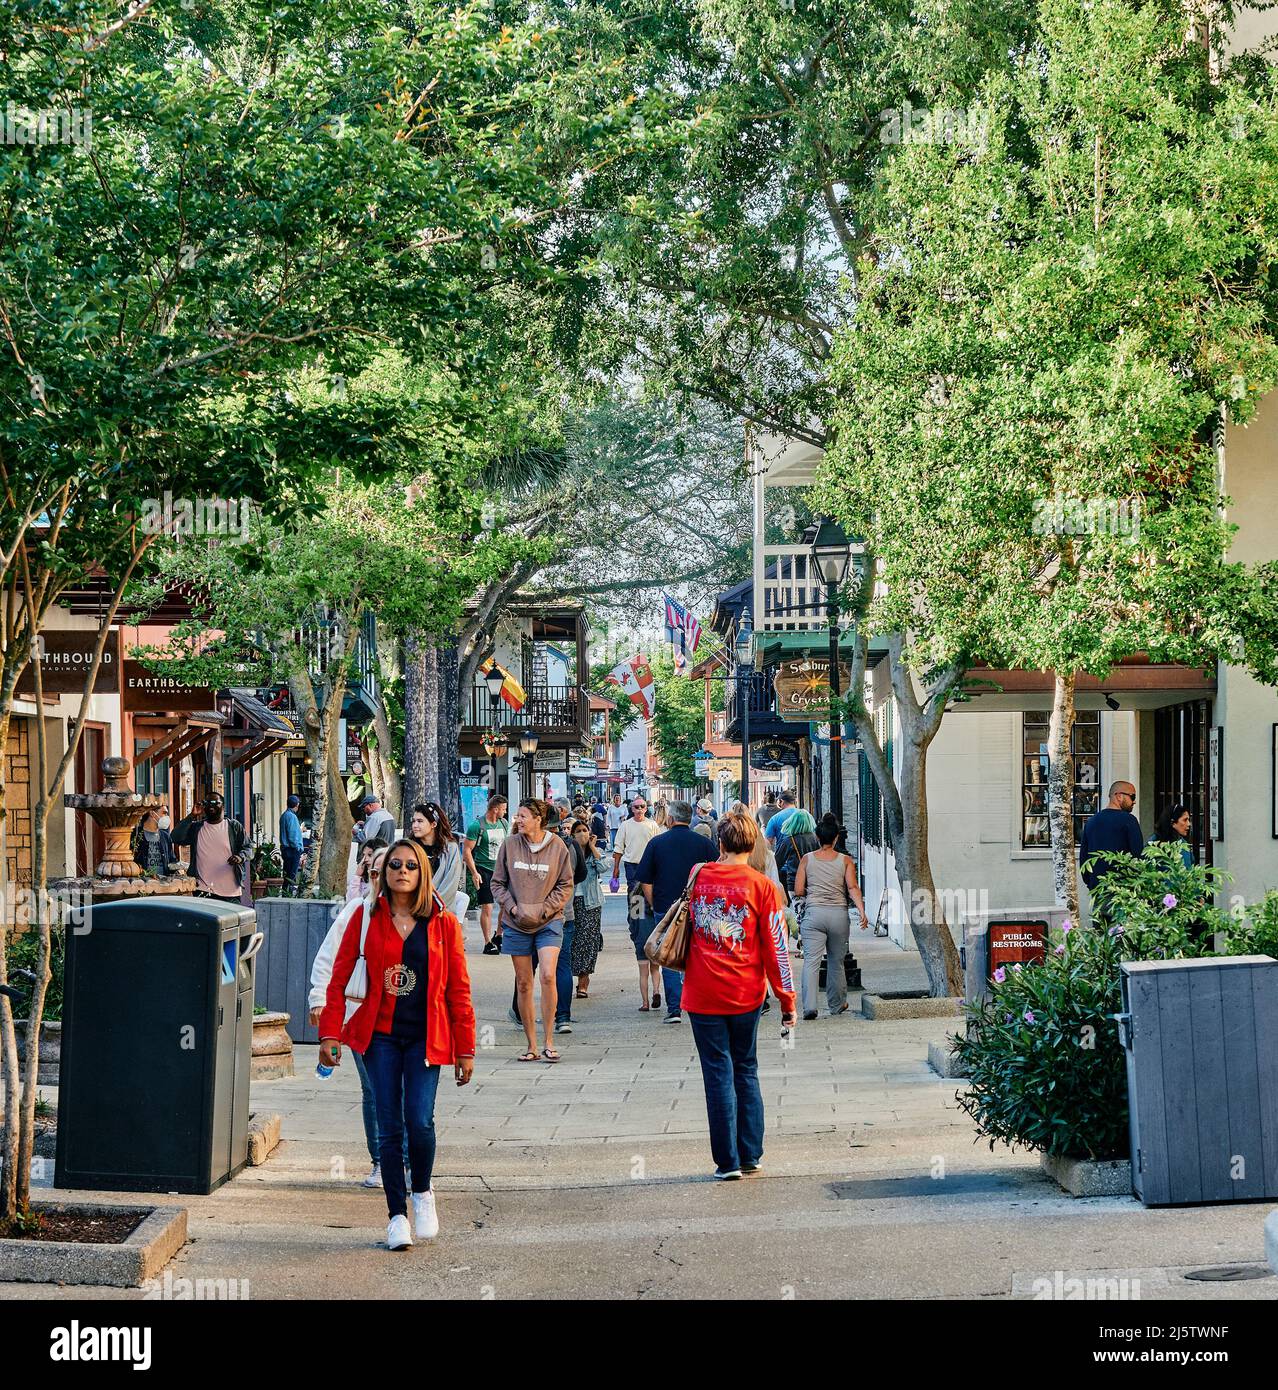 Les touristes ou les gens marchent ou marchent le long de la rue historique de St George dans la vieille ville de Saint Augustine Floride, États-Unis. Banque D'Images